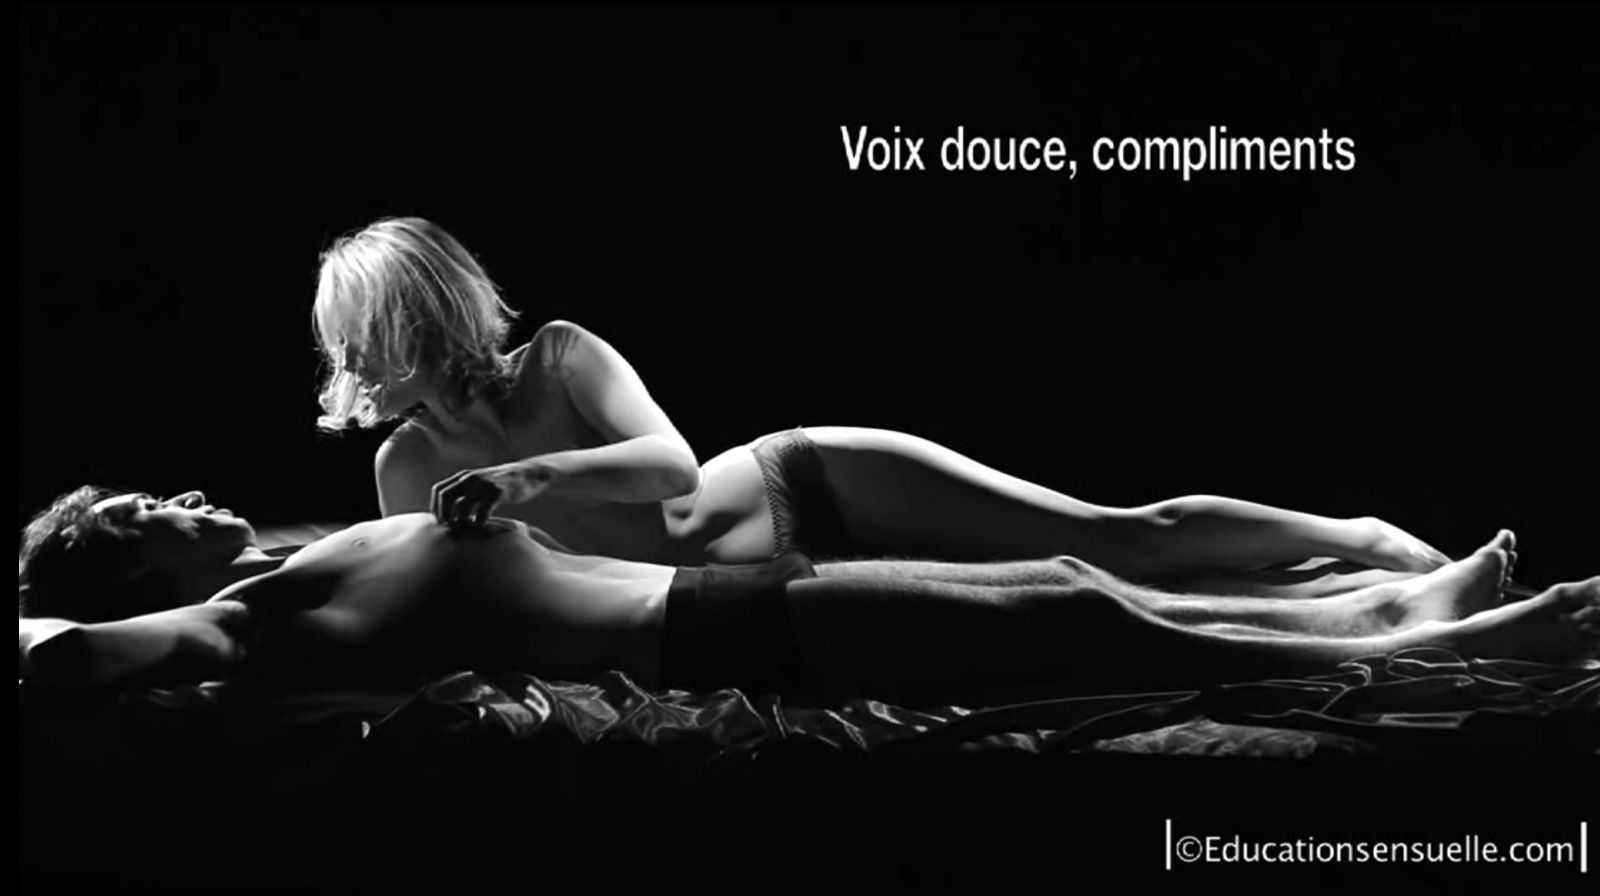 Image extraite des films Éducation sensuelle sur le site educationsensuelle.com.